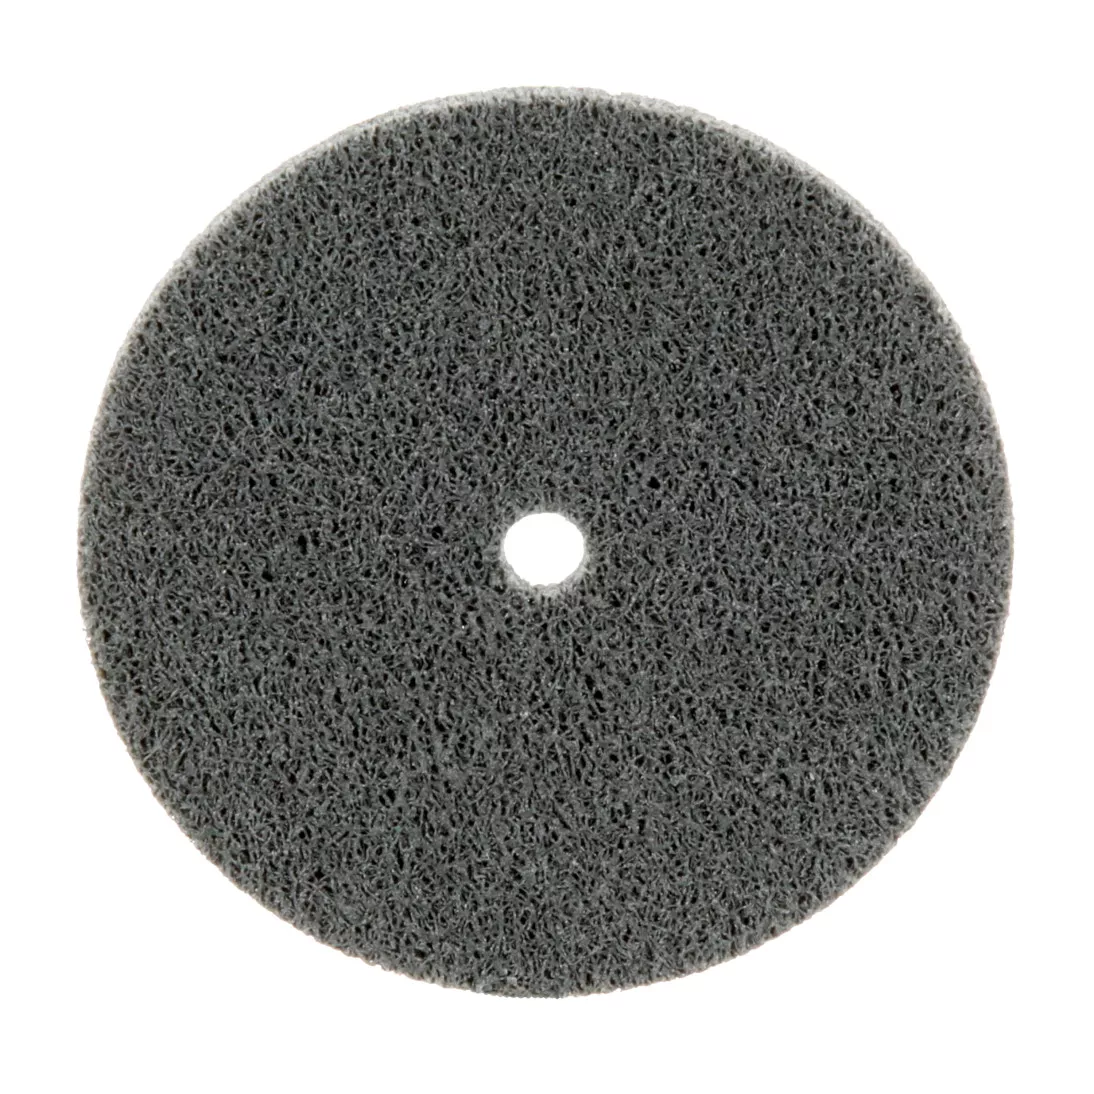 Standard Abrasives™ S/C Unitized Wheel 873233, 732 3 in x 1/8 in x 1/4
in, 10 ea/Case